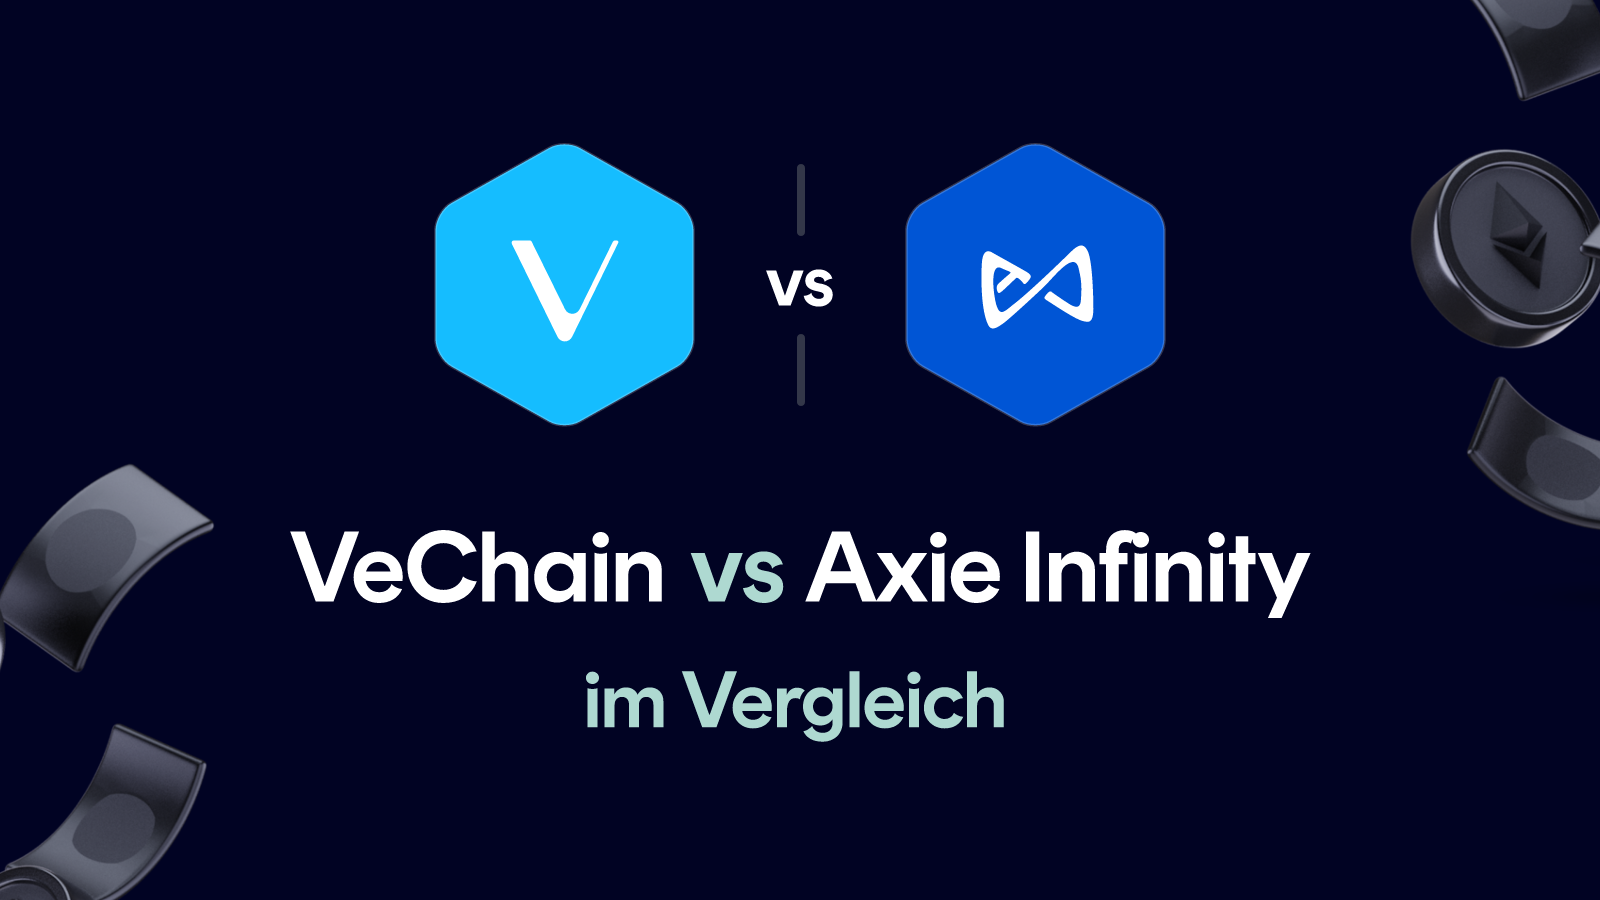 VeChain vs Axie Infinity